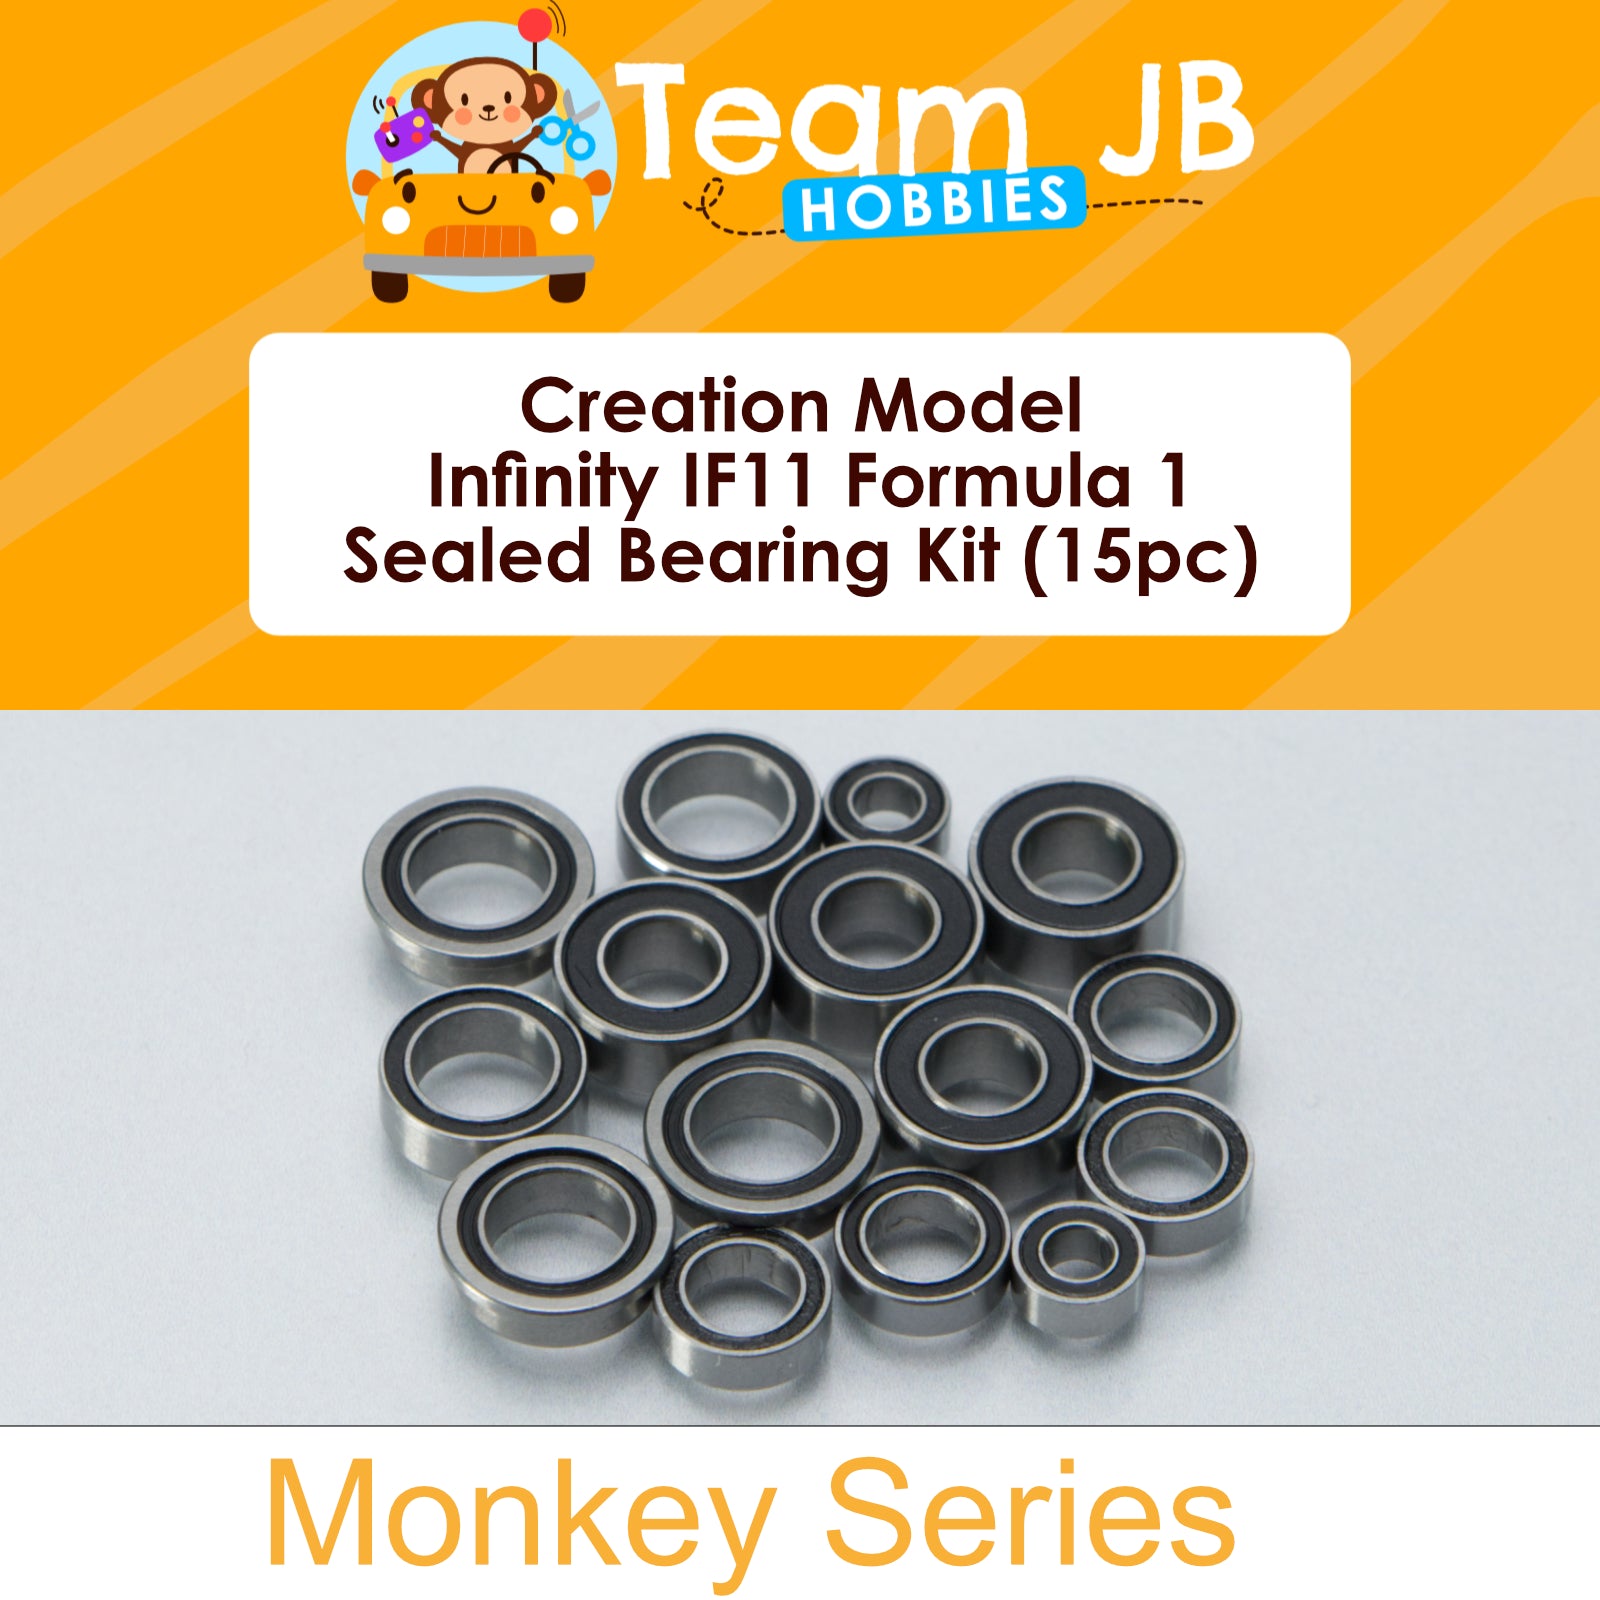 Creation Model Infinity IF11 Formula 1 - Sealed Bearing Kit